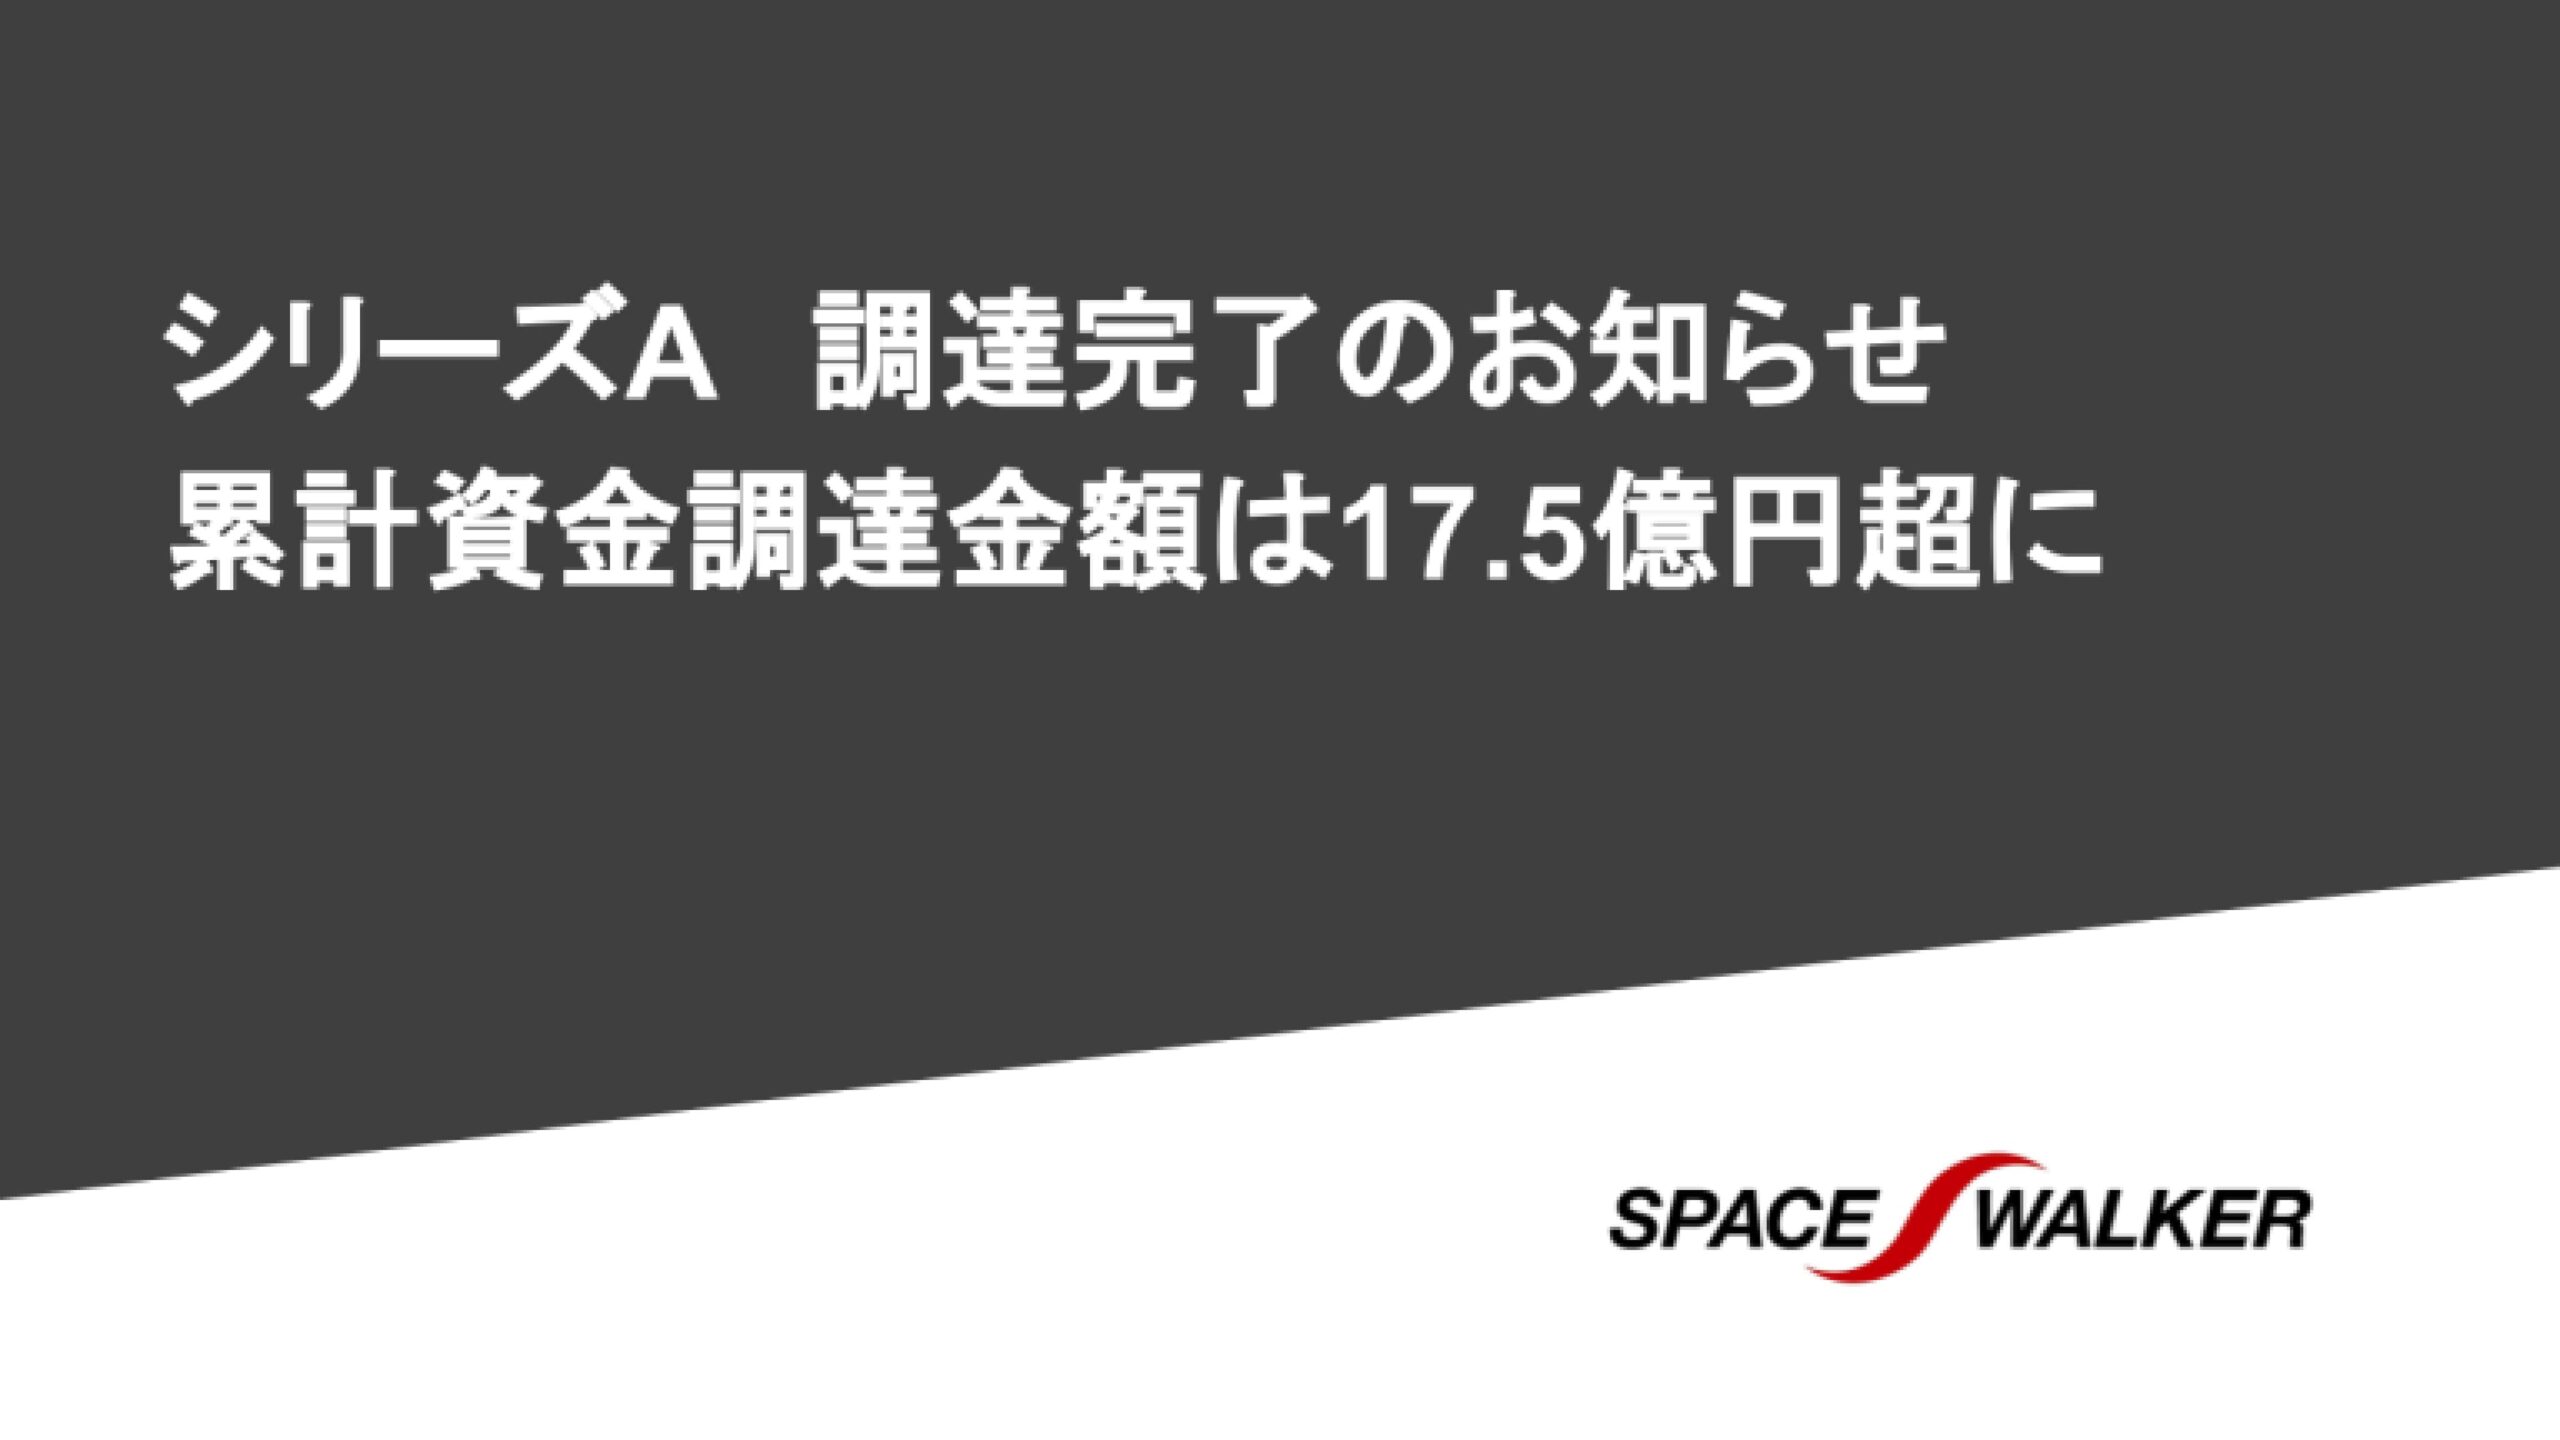 株式会社SPACE WALKERシリーズAラウンドで7.13億円の資金調達を実施ー累計資金調達金額は17.54億円